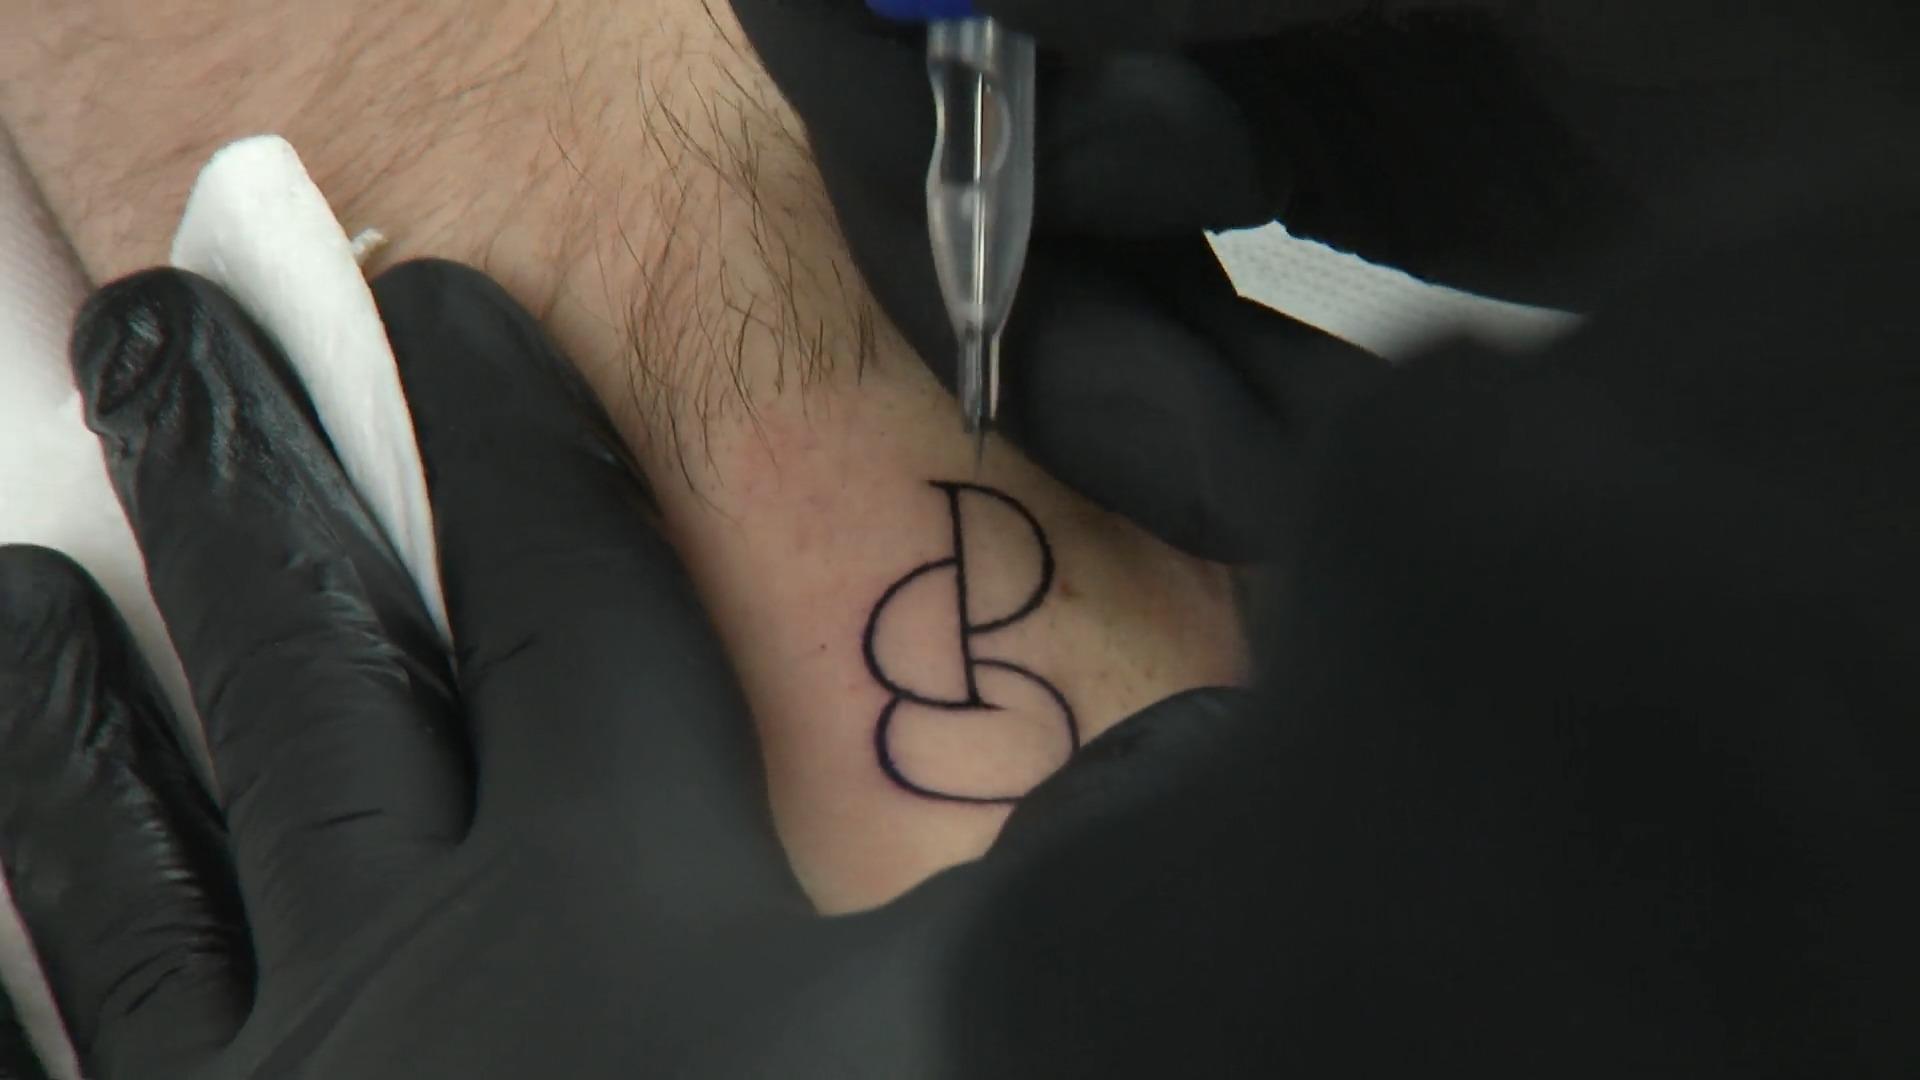 Neues Tattoo zeigt Bereitschaft zur Organspende Ein bestechendes Zeichen